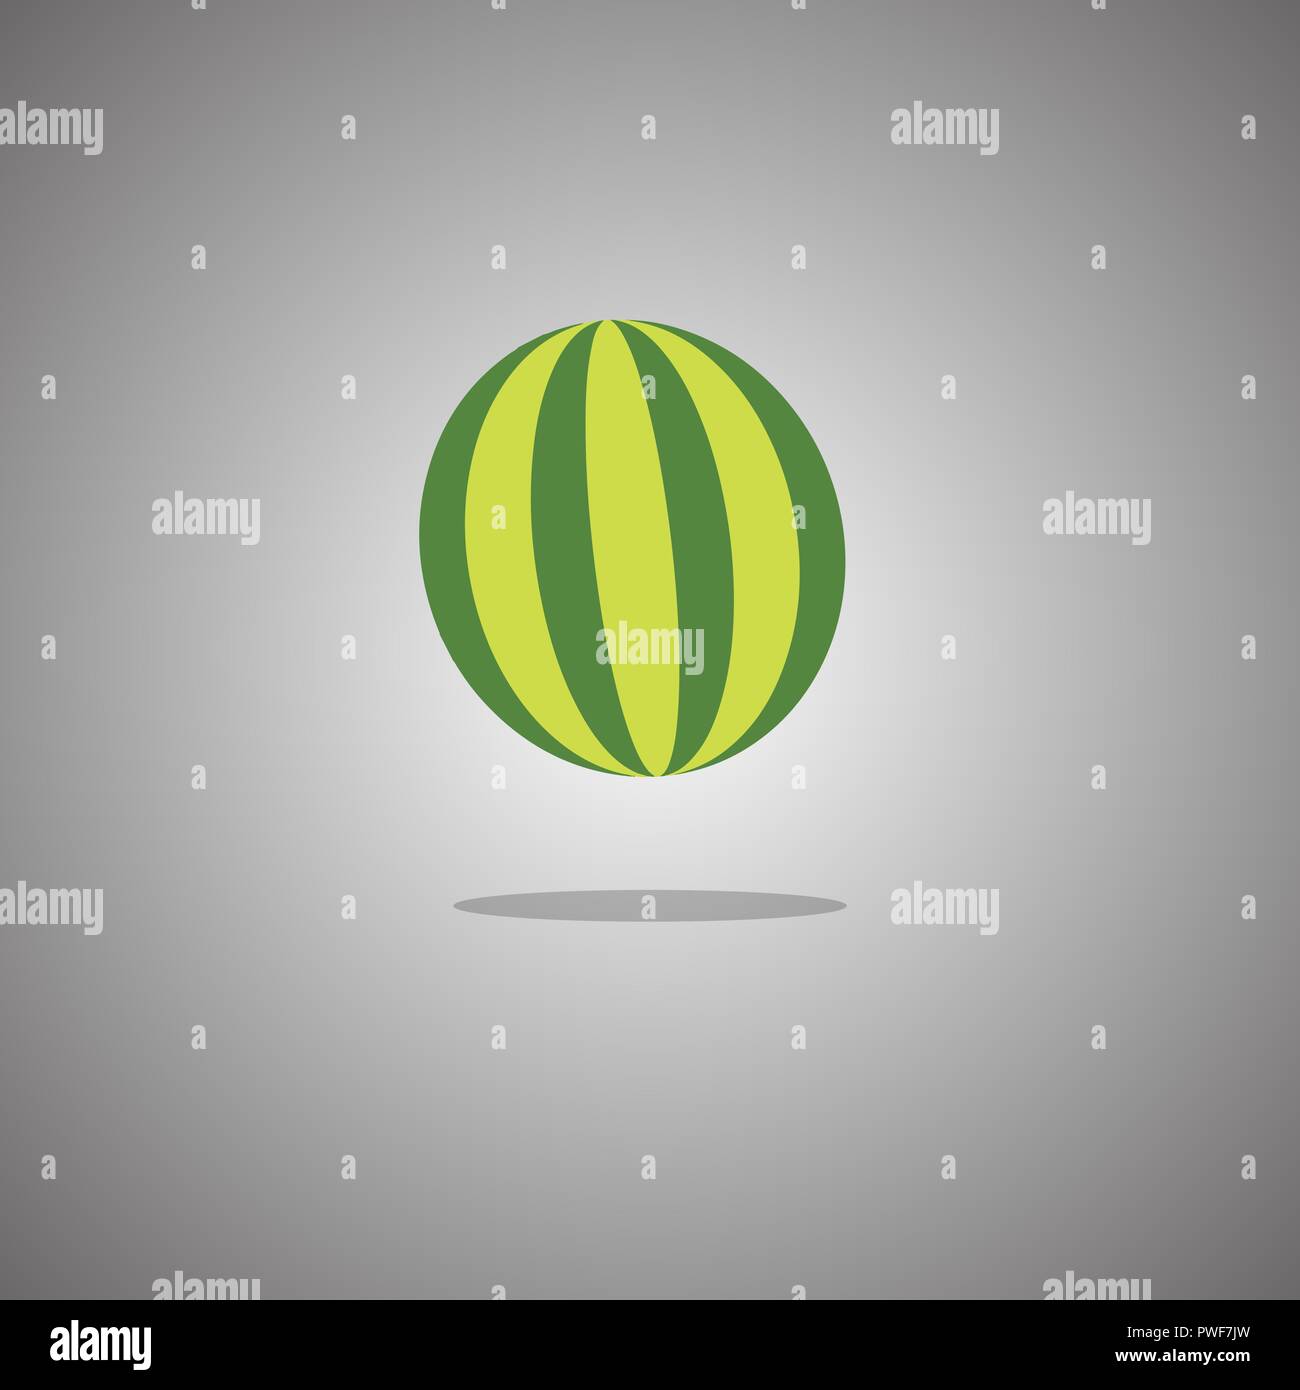 Wassermelone auf grauem Hintergrund mit Farbverlauf. Vector Illustration. Stock Vektor